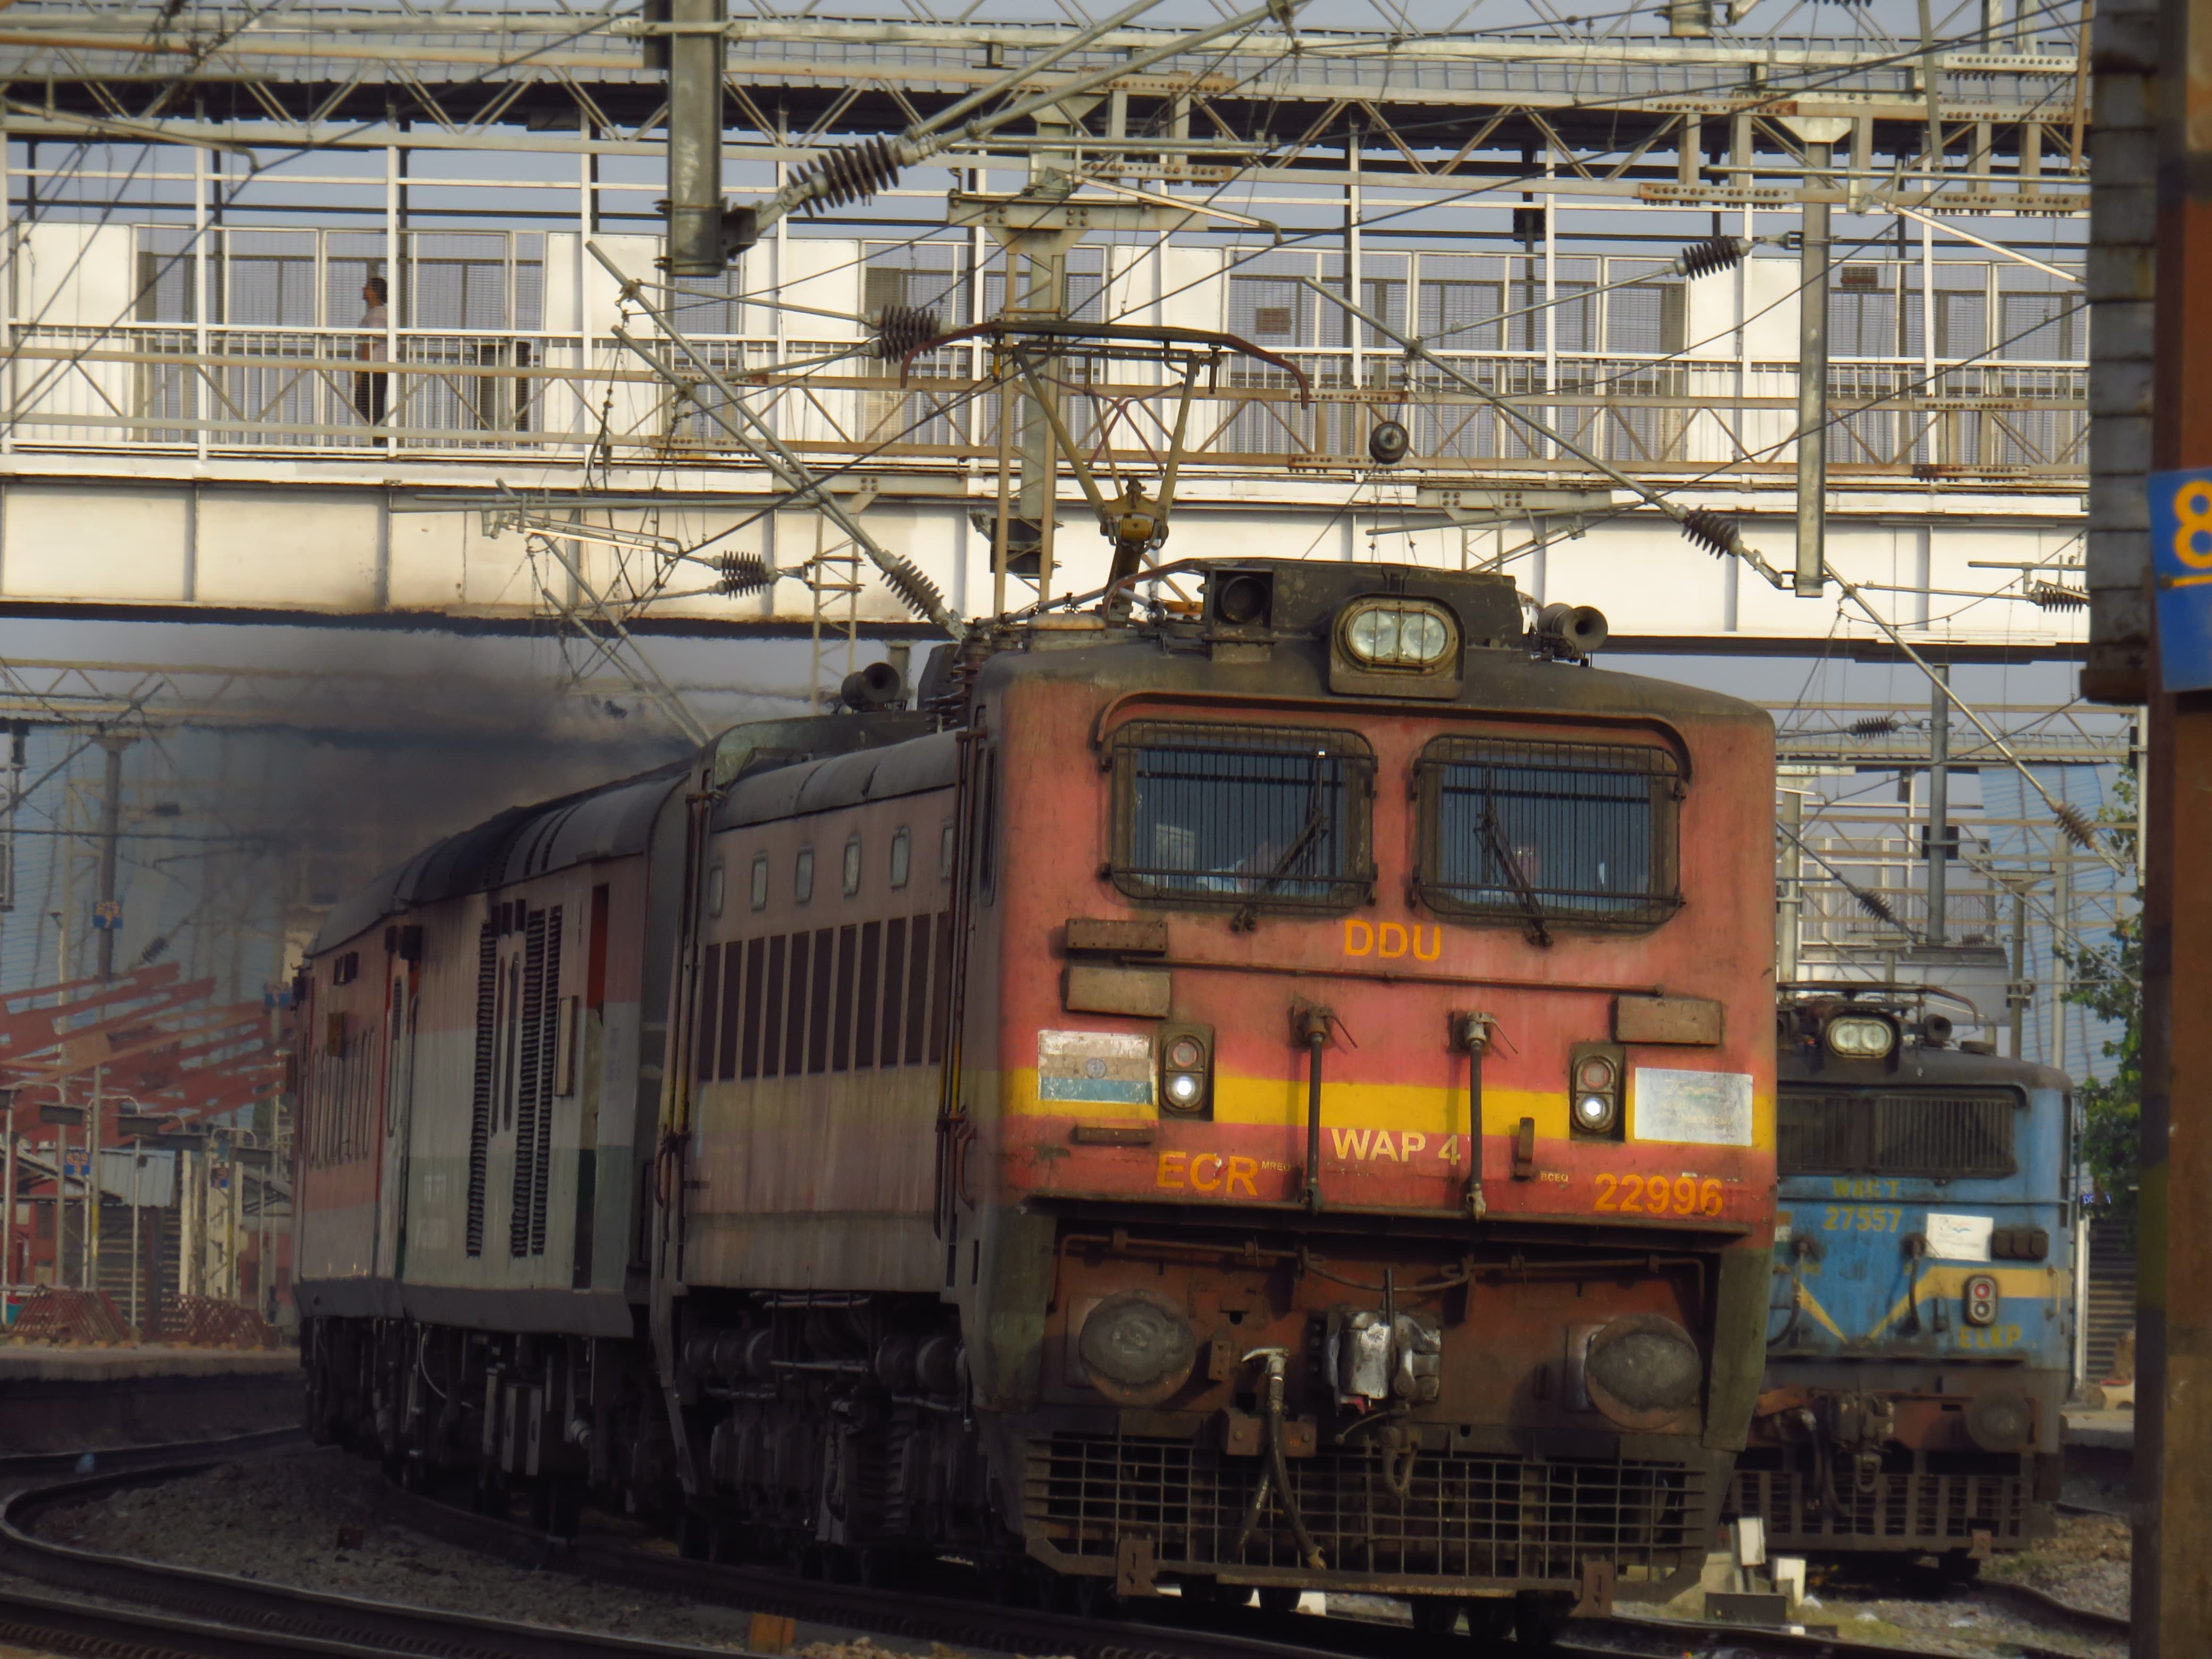 रेलवे का तोहफा: नई सुपरफास्ट एक्सप्रेस सेवा और विस्तार प्रस्तावित!